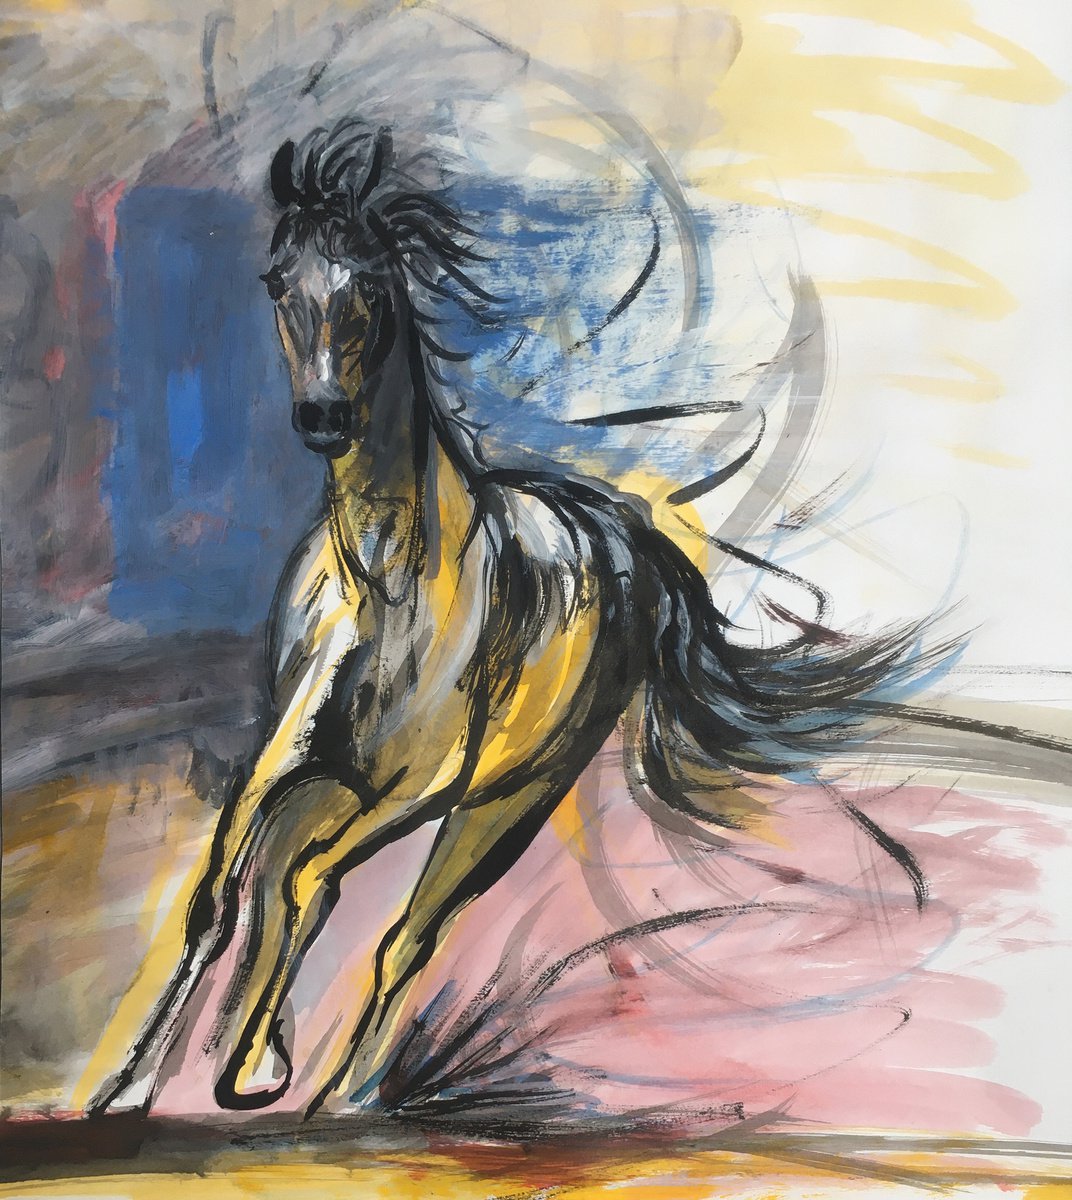 Dynamic horse sketch by Ren Goorman